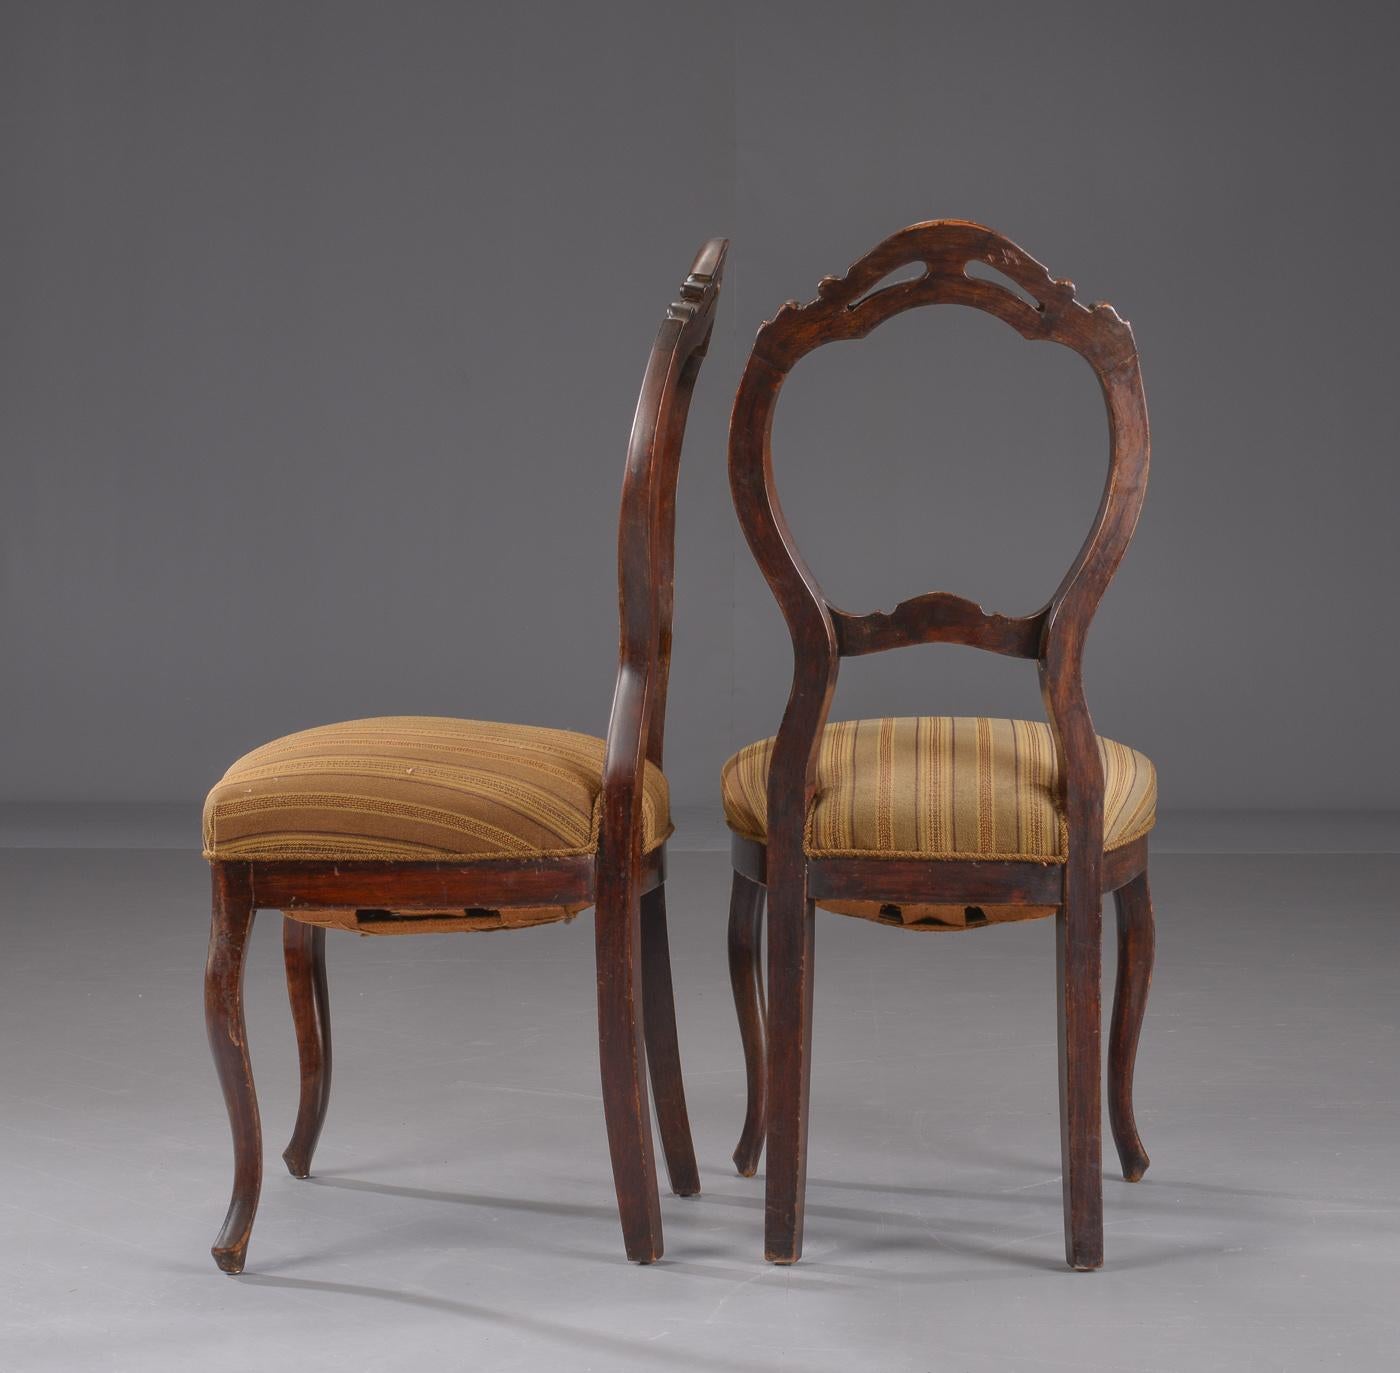 Ensemble de six chaises de salle à manger de style rococo, fabriquées en Suède, vers 1860. Façade sculptée de fleurs et de feuillages, recouverte d'un tissu rayé. H 97 cm, hauteur du siège environ 45 cm.
Les sièges à ressorts recevront un nouveau